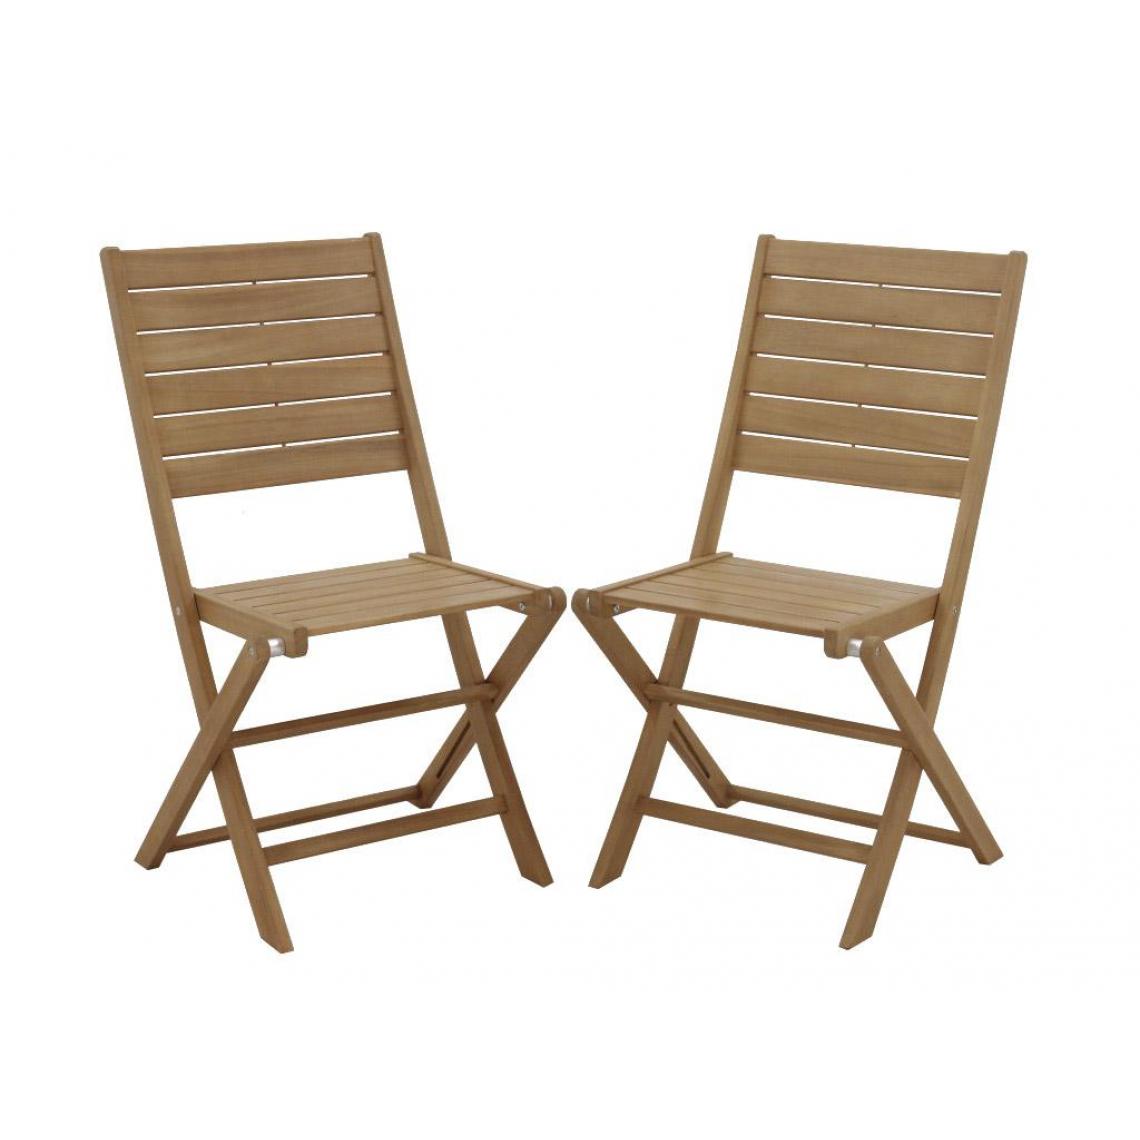 Vente-Unique - Chaise de jardin NEMBY - Chaises de jardin